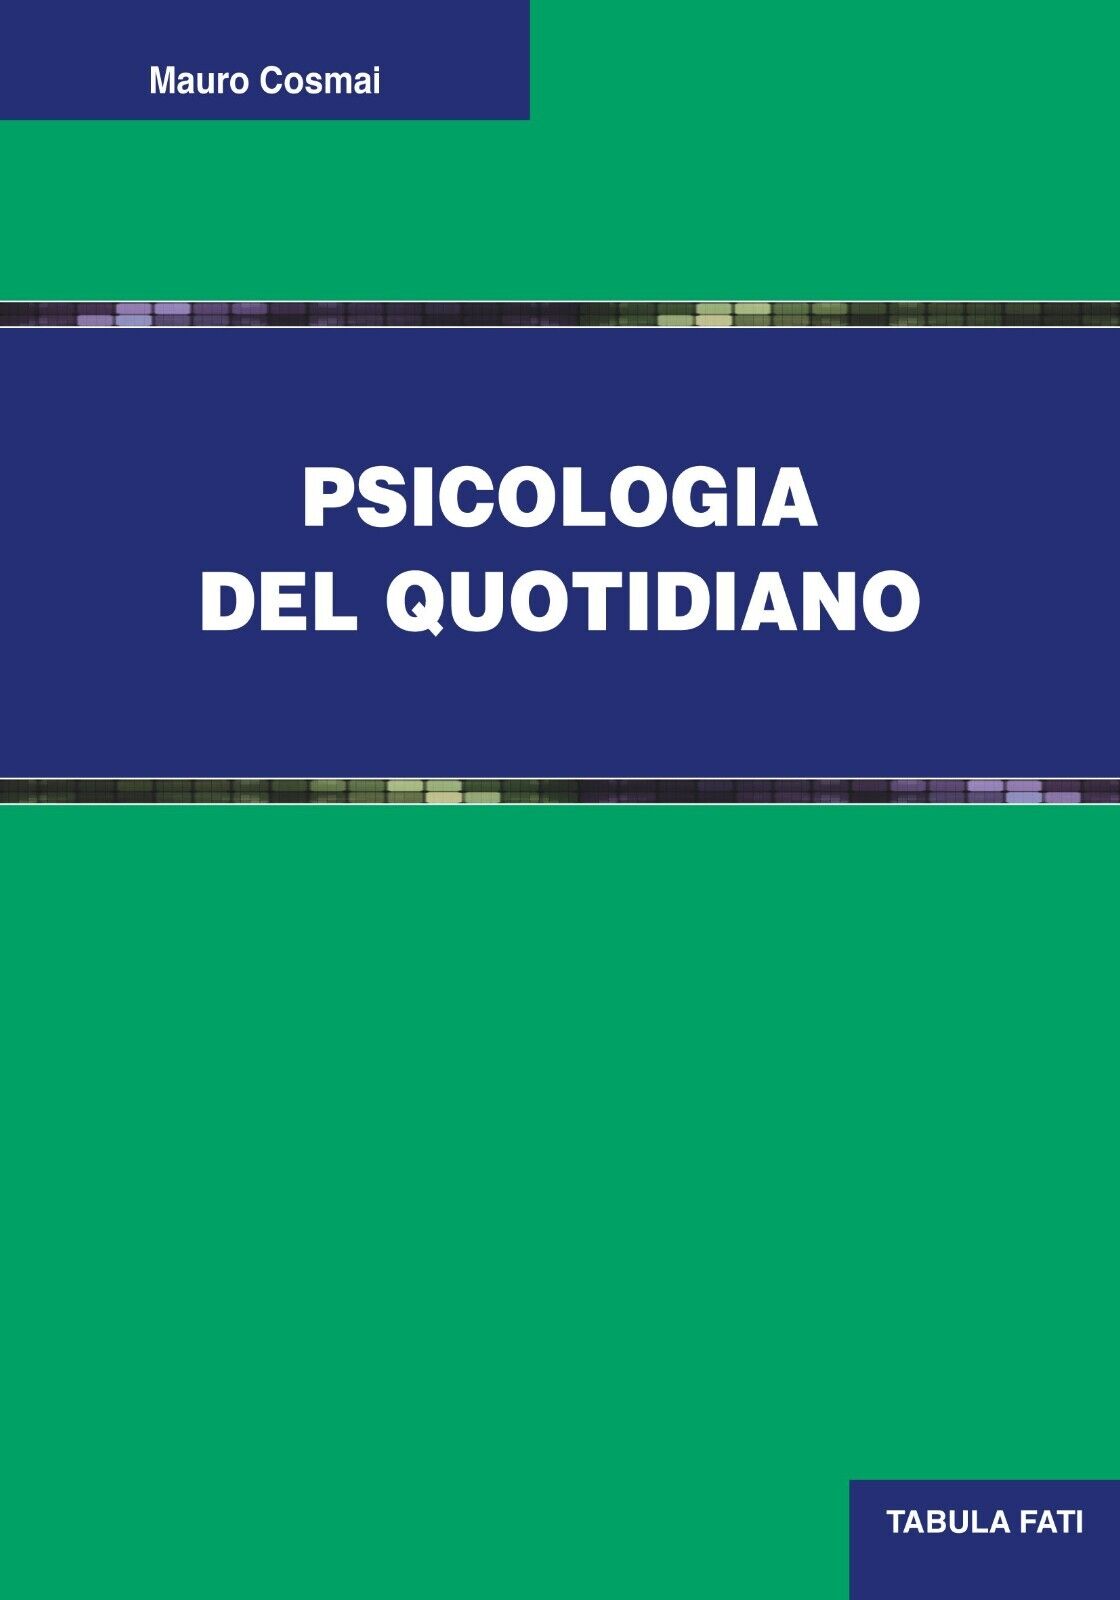 Psicologia del quotidiano di Mauro Cosmai, 2017, Tabula Fati